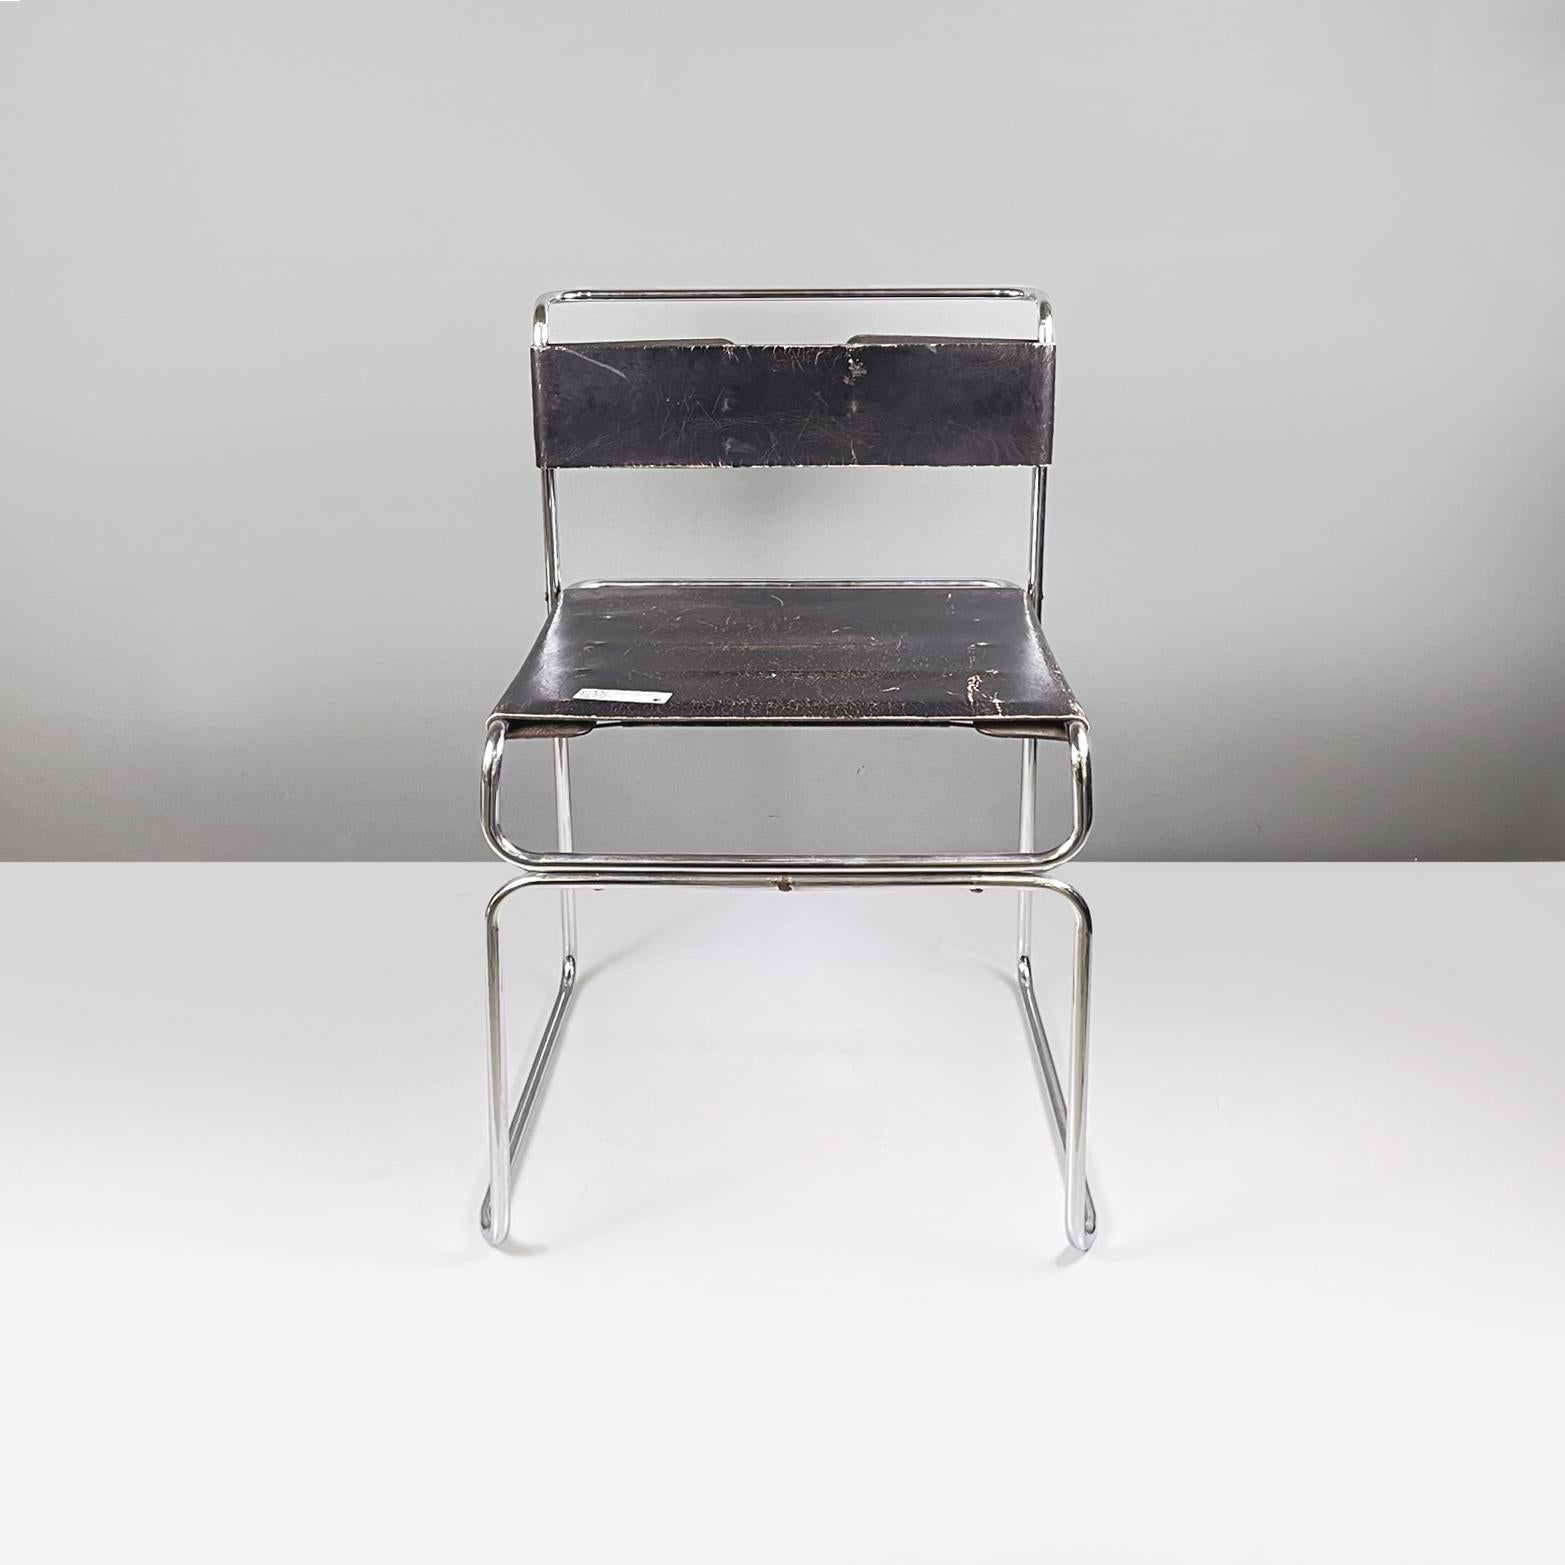 Italia modern Schwarzer Leder- und Stahlstuhl Libellula von Giovanni Carini für Planula, 1970er Jahre
Stuhl mod. Libellula (Libelle) mit Sitz und Rückenlehne bestehend aus zwei rechteckigen Streifen aus schwarzem Leder. Die Struktur, die die